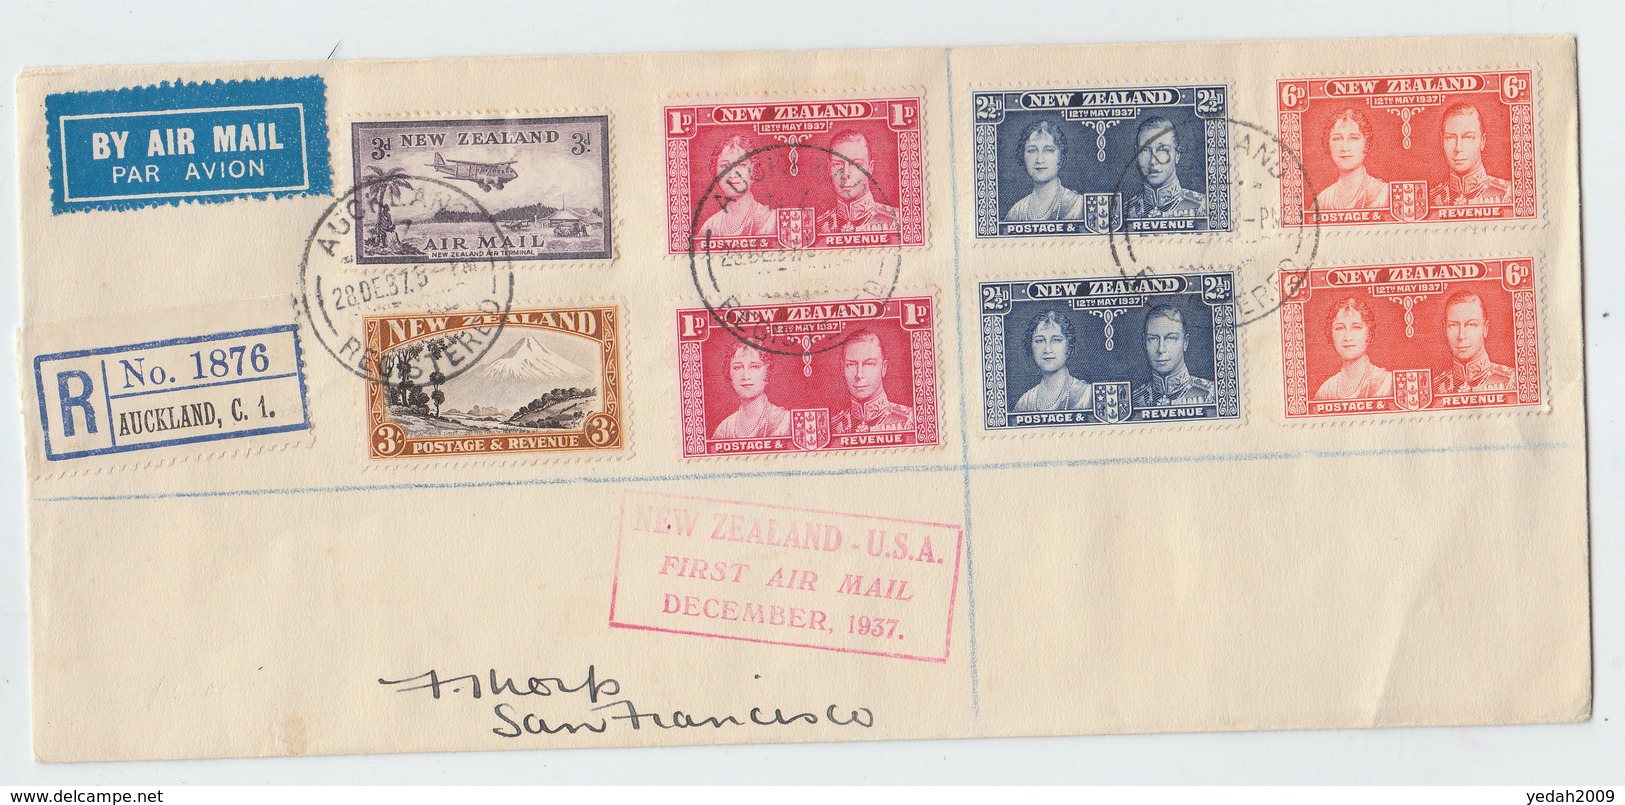 New Zealand/USA FIRST FLIGHT COVER 1937 - Luchtpost